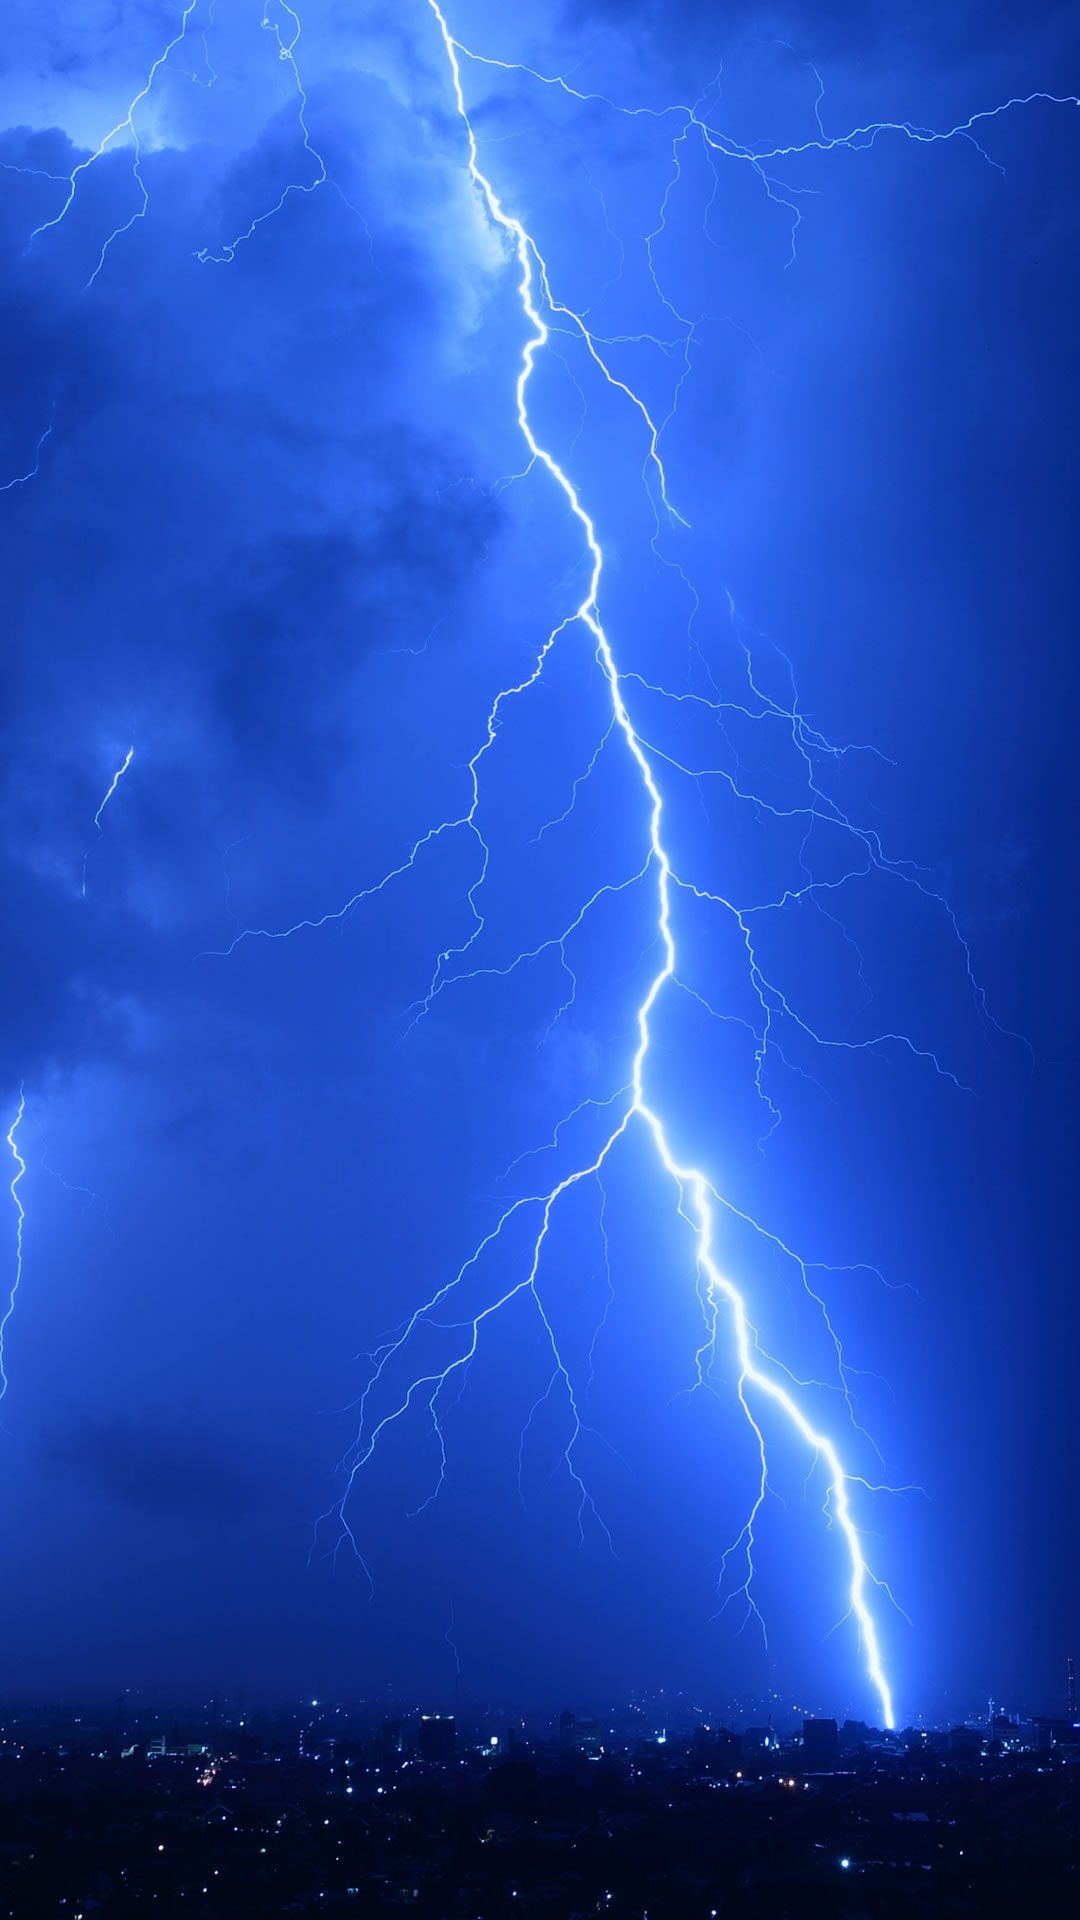 Cool Lightning Strikes iPhone 8 Wallpaper Free Download